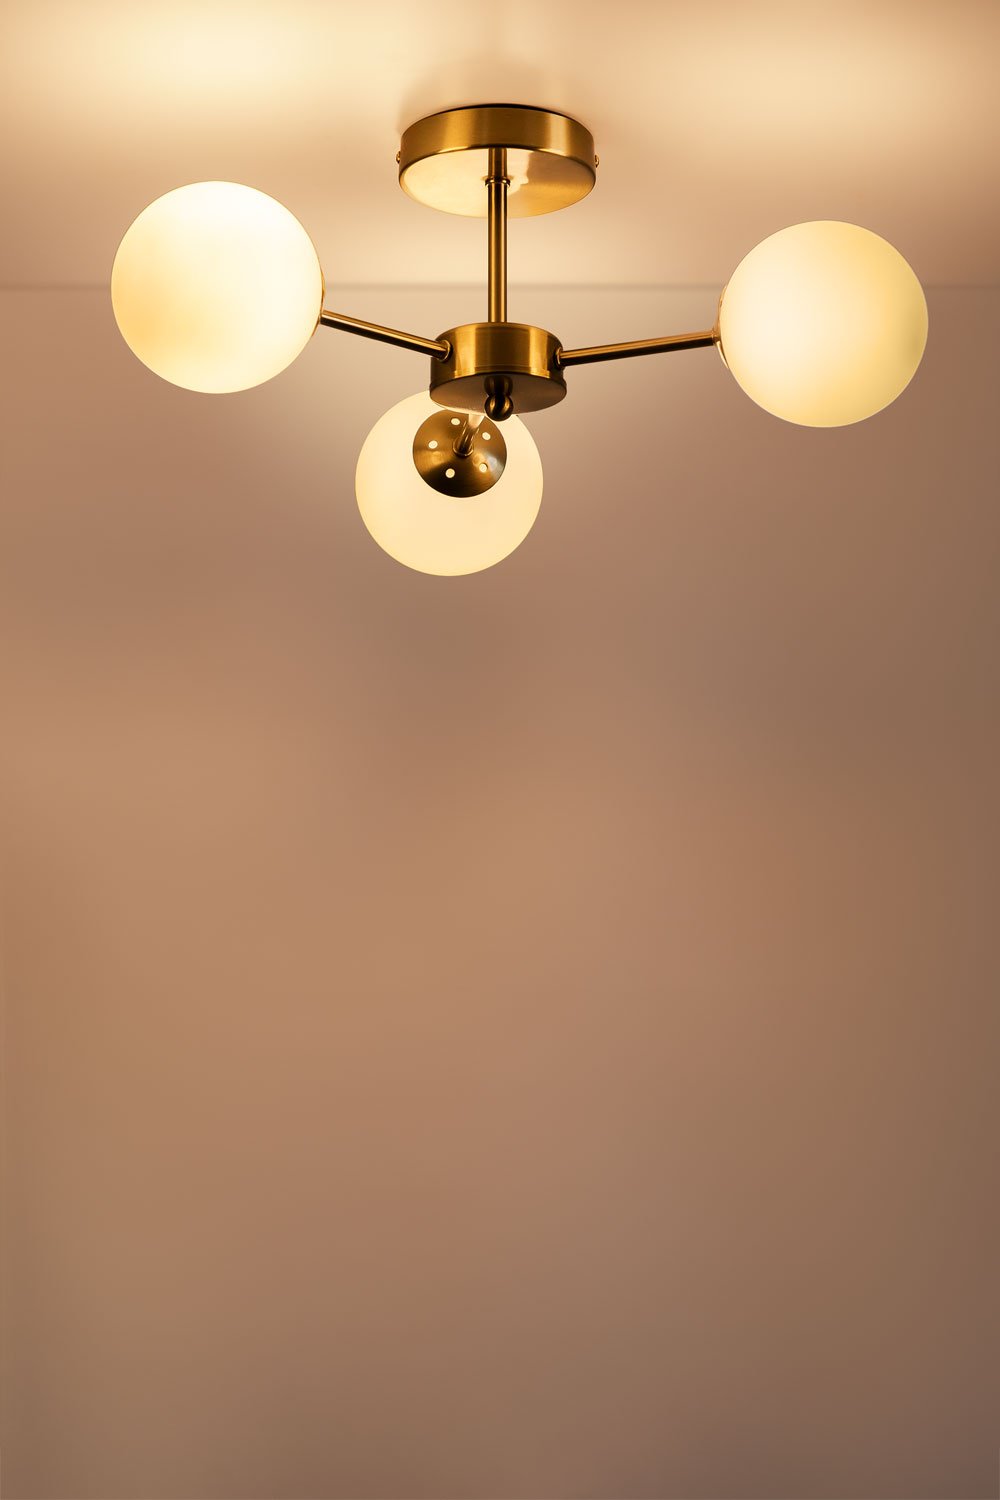 Plafondlamp met 3 kristallen bollen Uvol, galerij beeld 2